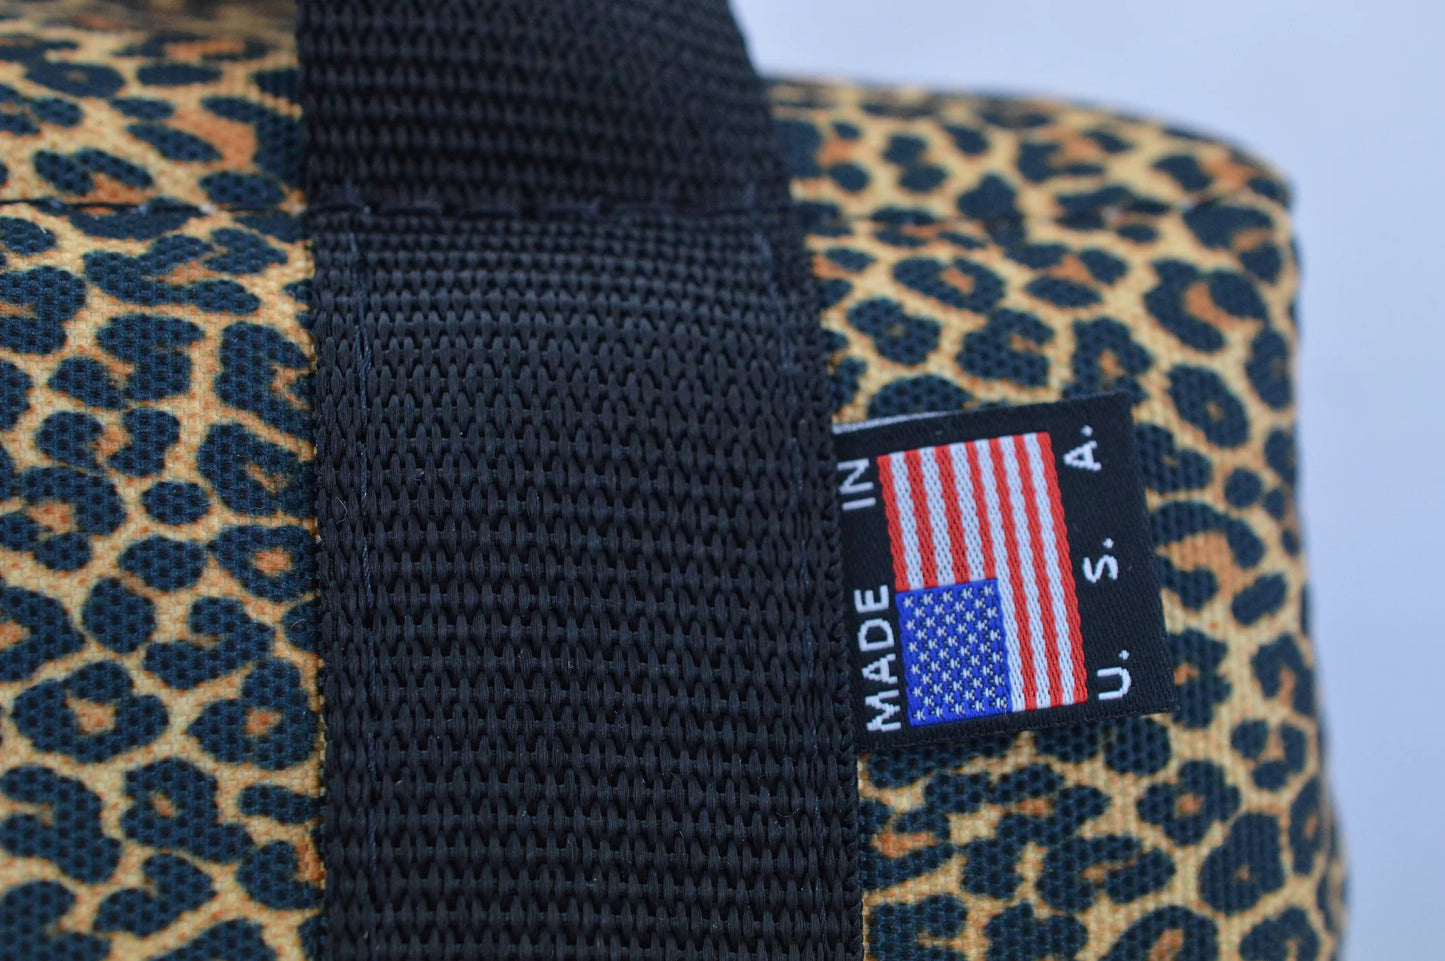 AO Backpack Cooler 18Pack Leopard